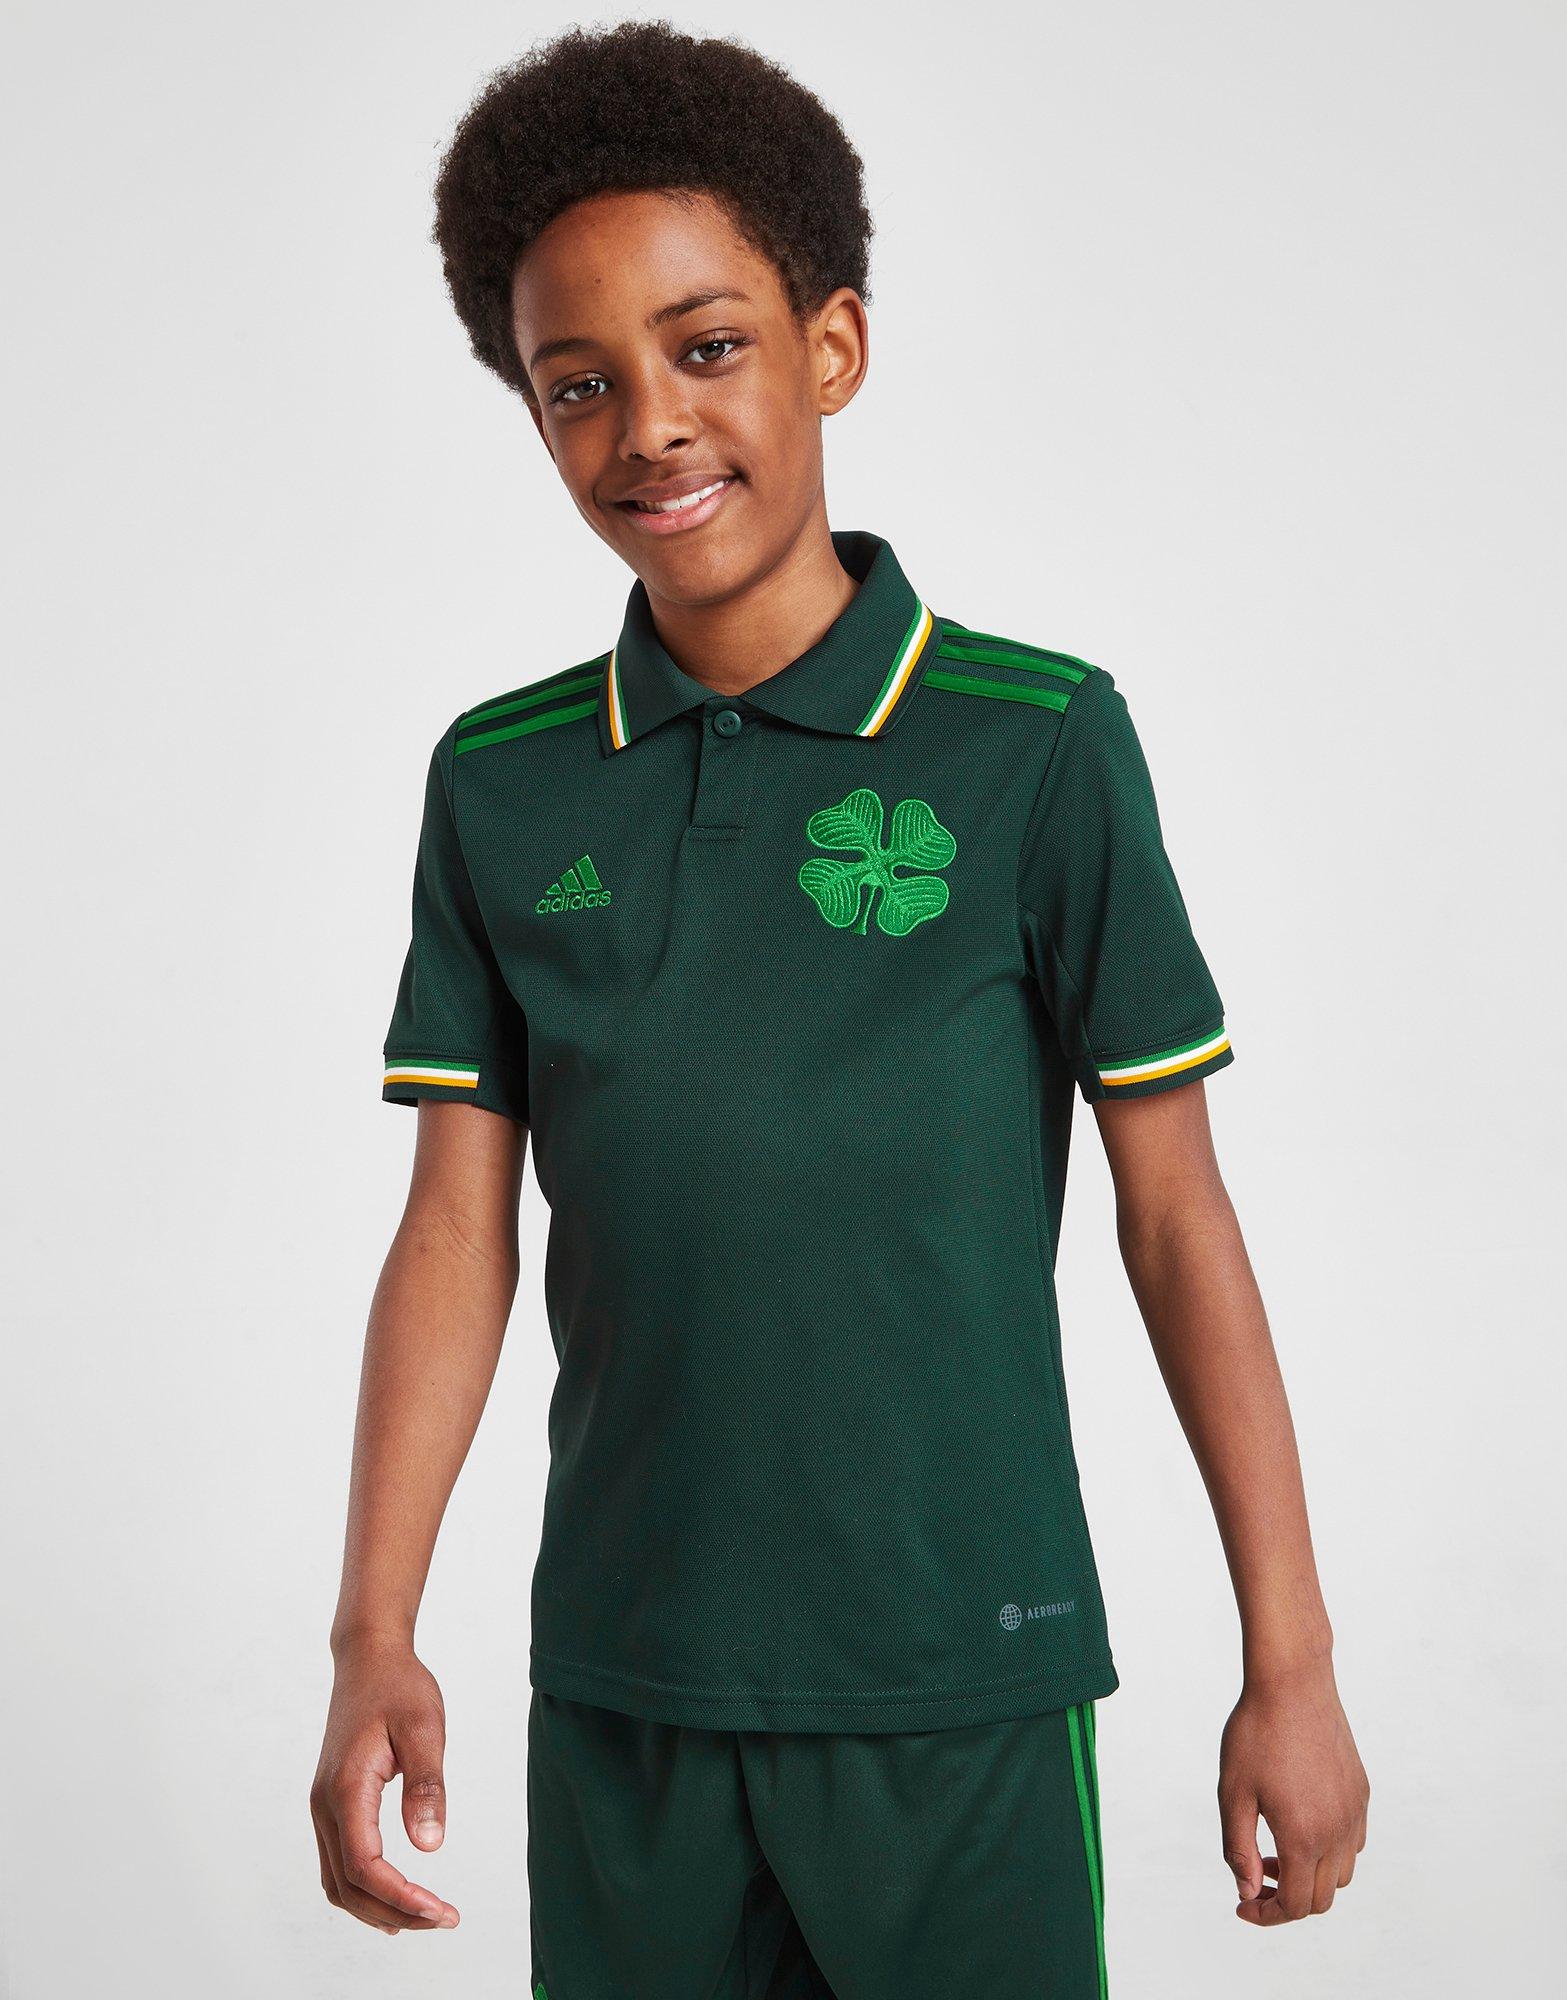 Adidas x Celtic FC reveal 2022/23 Origins Kit